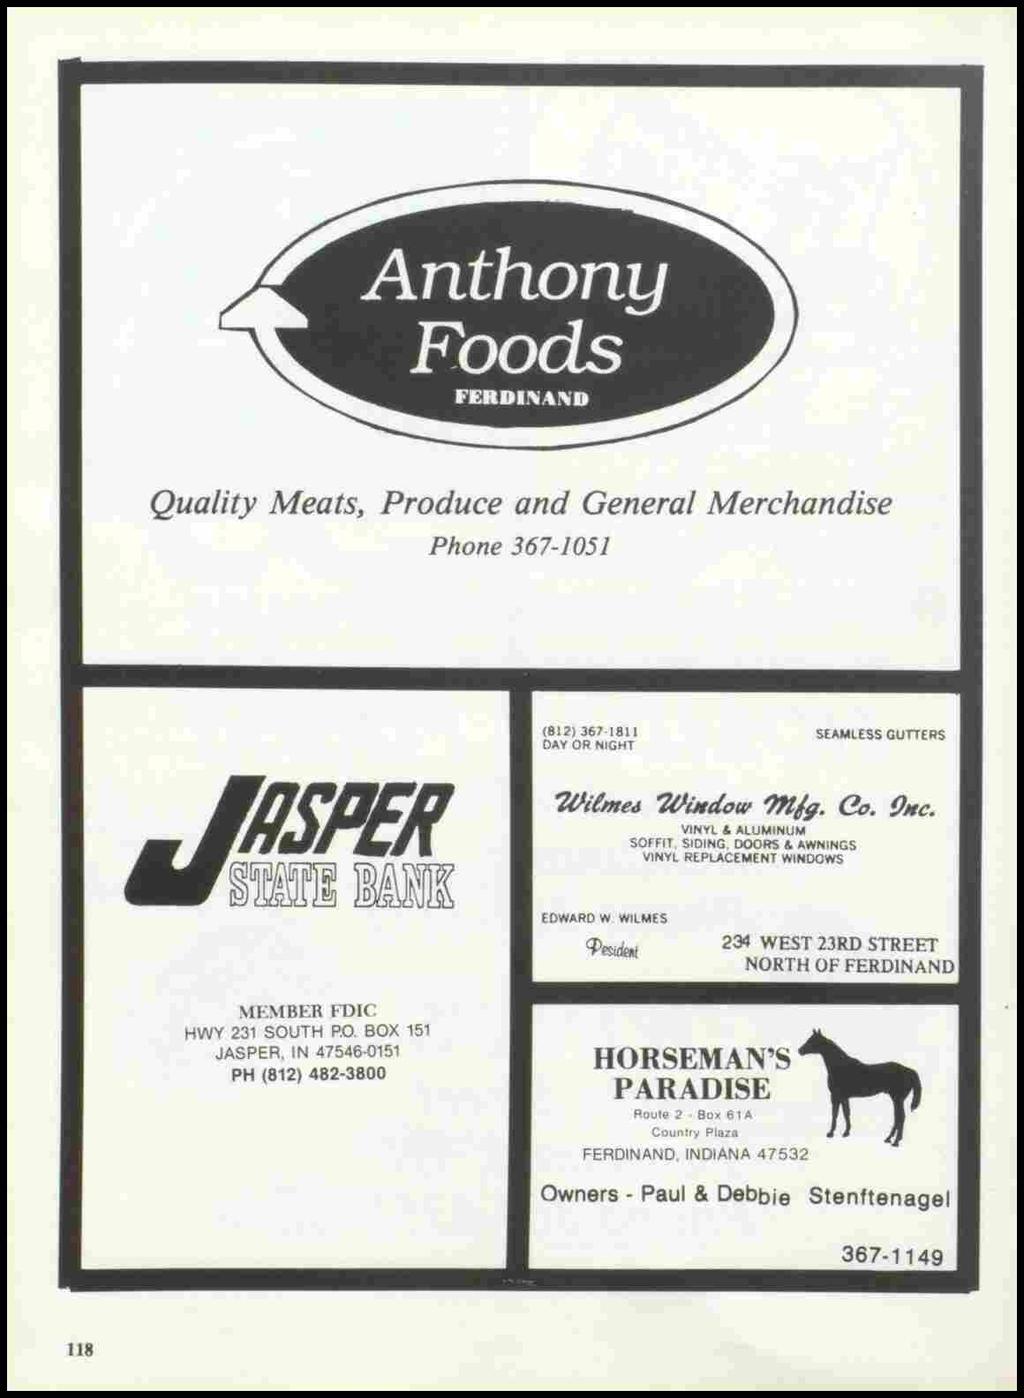 Quality Meats, Produce and General Merchandise Phone 367-1051 (812) 367-1811 DAY OR NIGHT SEAMLESS GUTTERS 1/Ji!metJ 1/JiJtatJw?lt/9. l?tj. 9Jtc. VINYL & ALUMINUM SOFFIT.